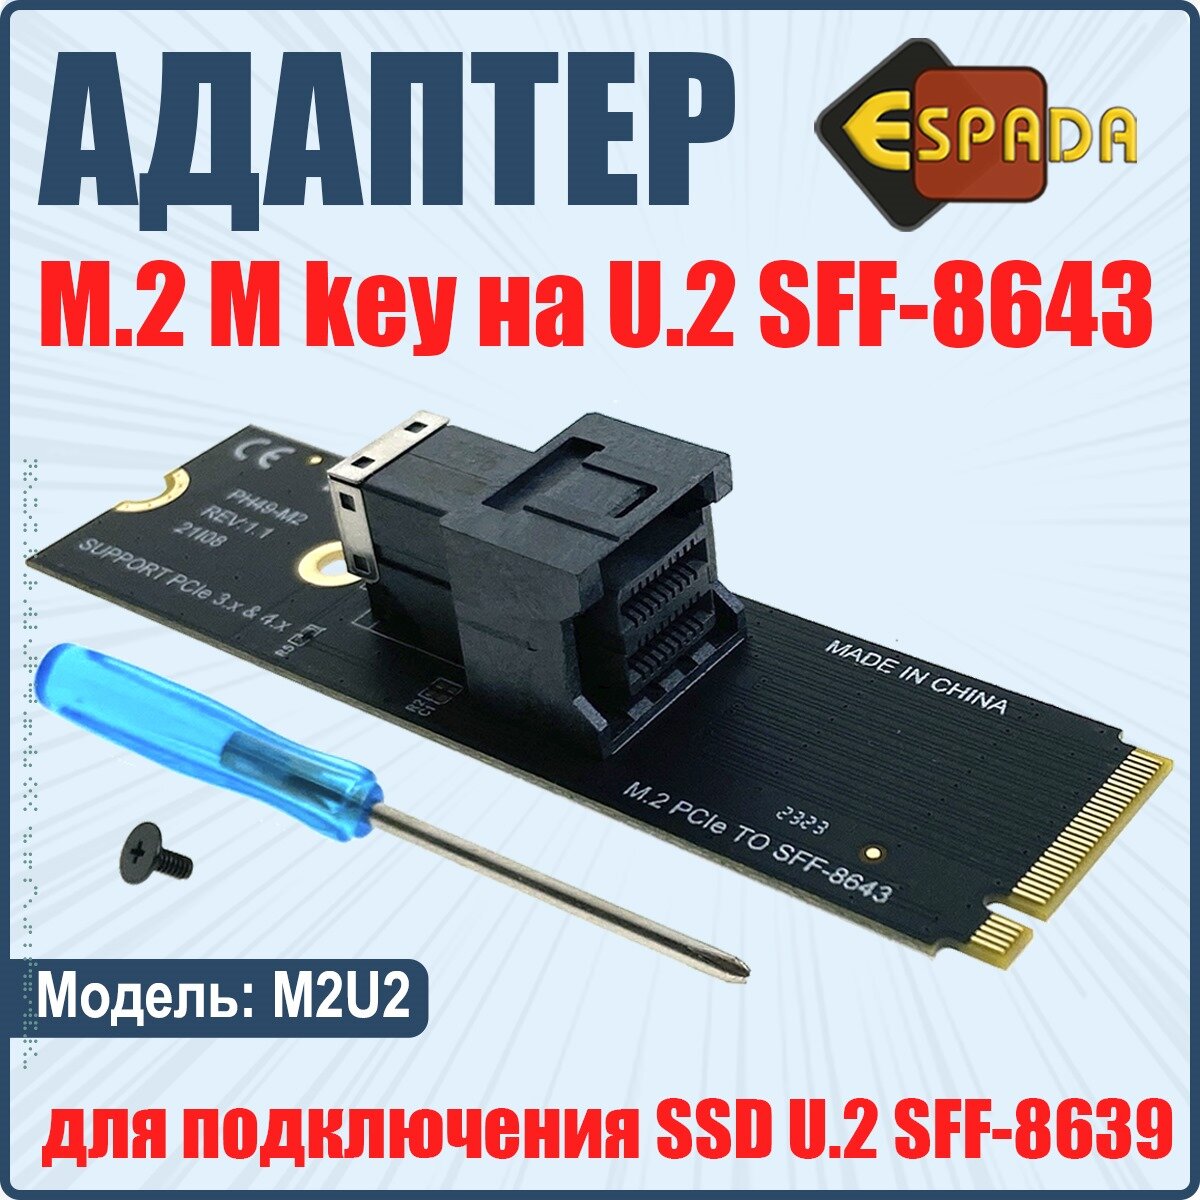 Адаптер для подключения SSD c разъемом U.2 SFF-8639 к разъему M.2 M key модель M2U2 Espada